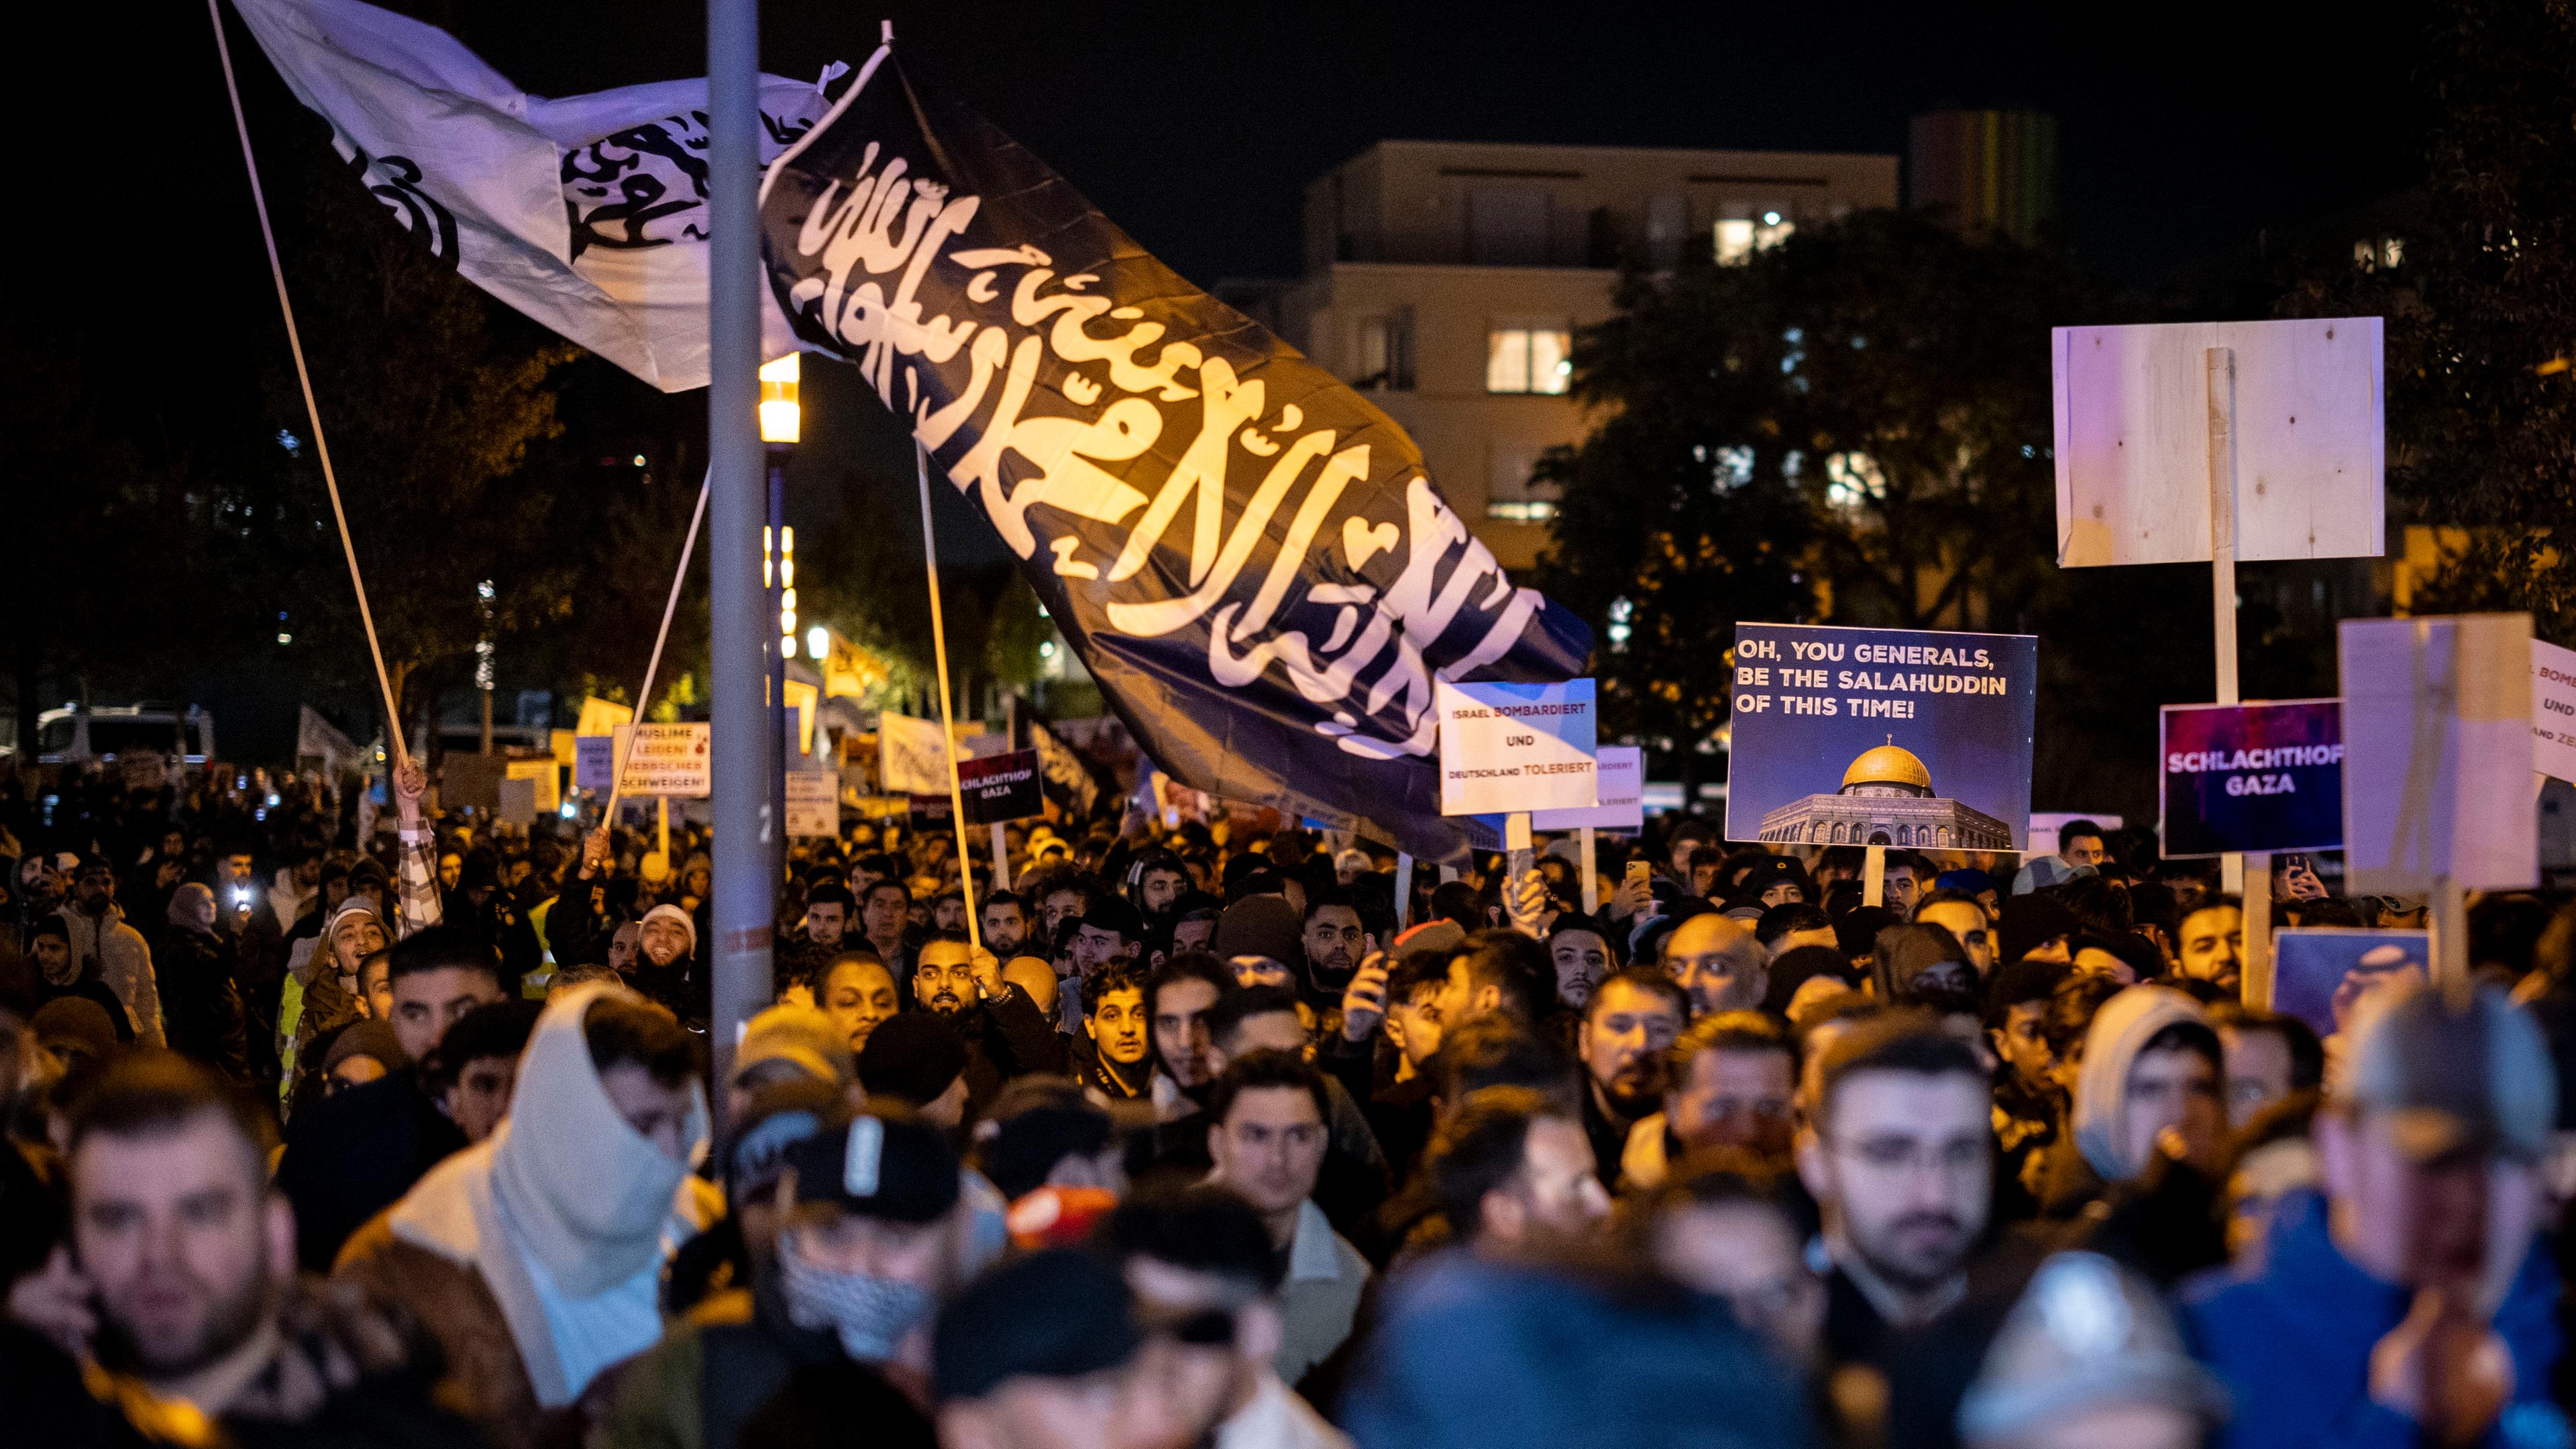 Viele Männer laufen am Abend in Essen bei einer Demonstration. Plakate und Fahnen werden geschwenkt. Es ist die schwarze Flagge von Al-Kaida zu sehen.